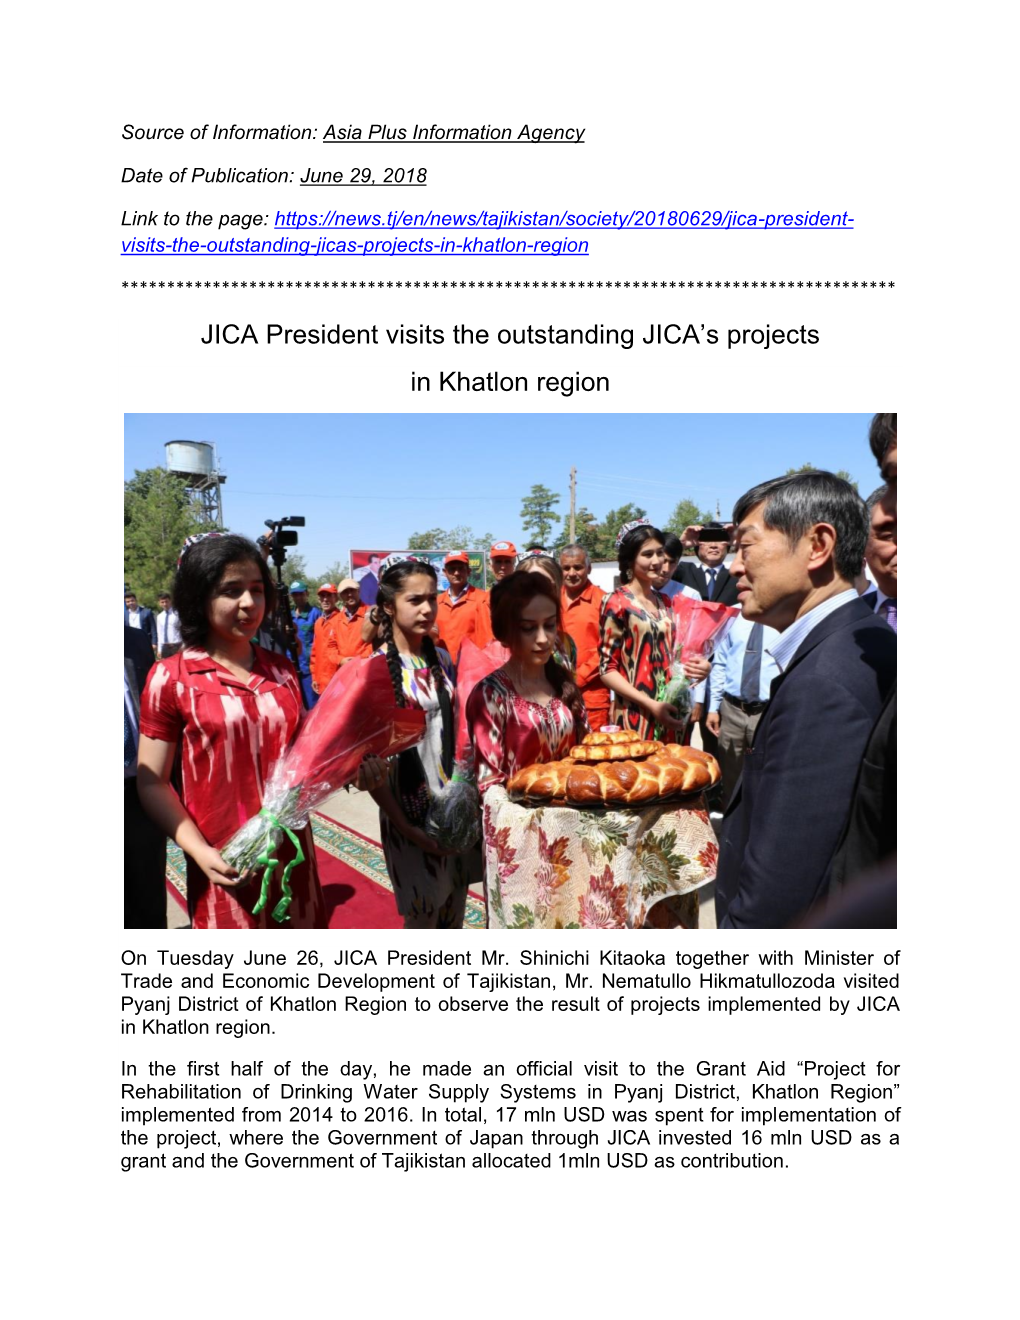 JICA President Visits the Outstanding JICA's Projects in Khatlon Region